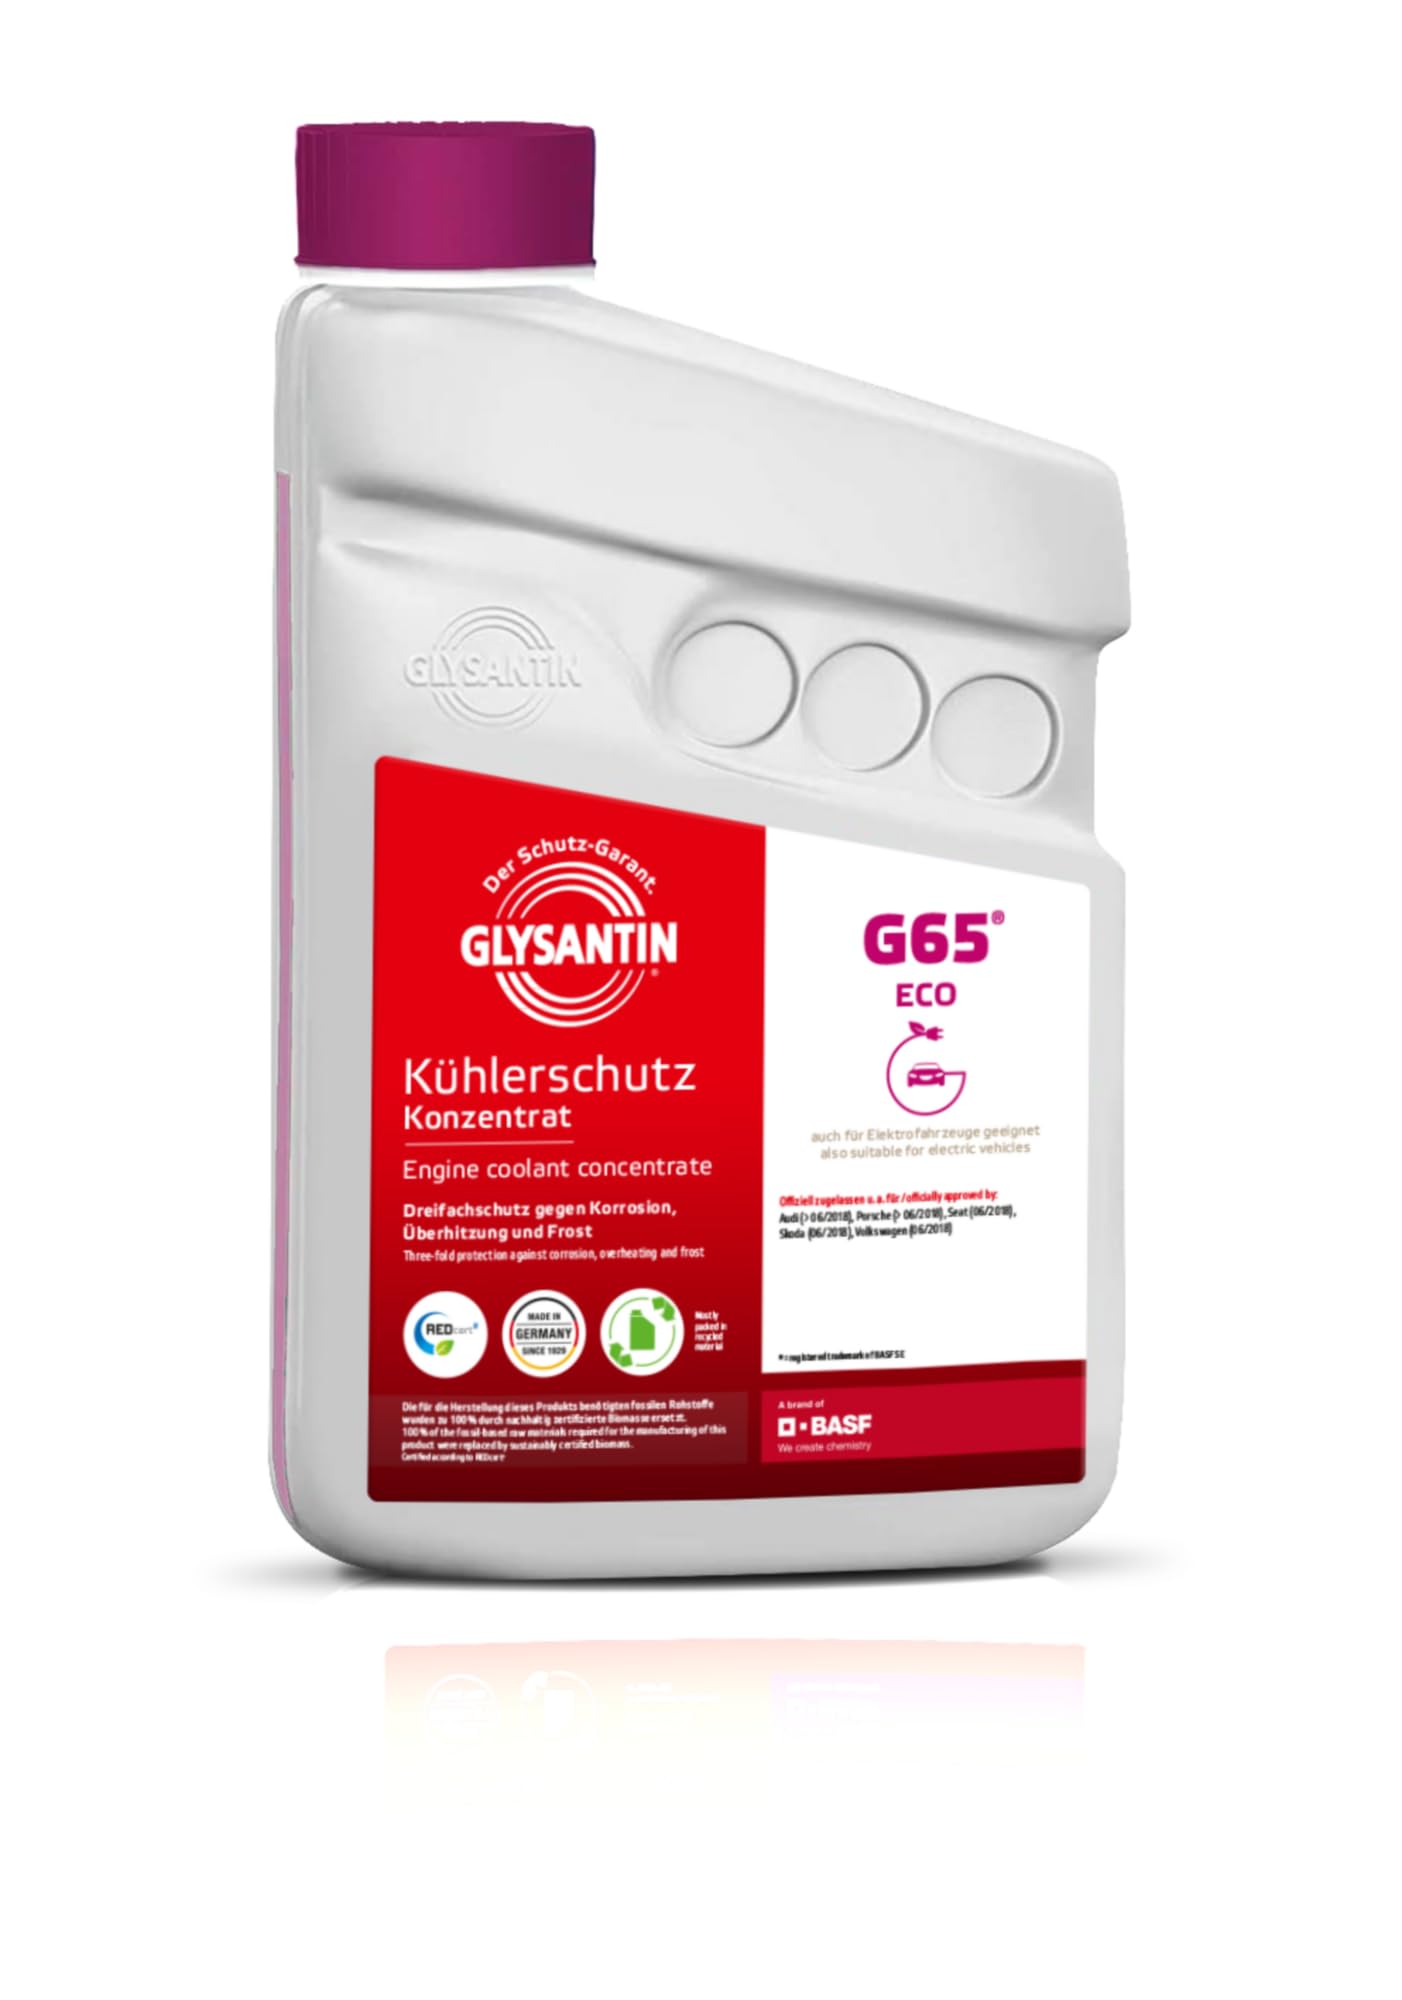 Glysantin G65 Kühlerschutzmittel Konzentrat, ECO BMB 100, silikatfrei, pink, 1 Liter von GLYSANTIN